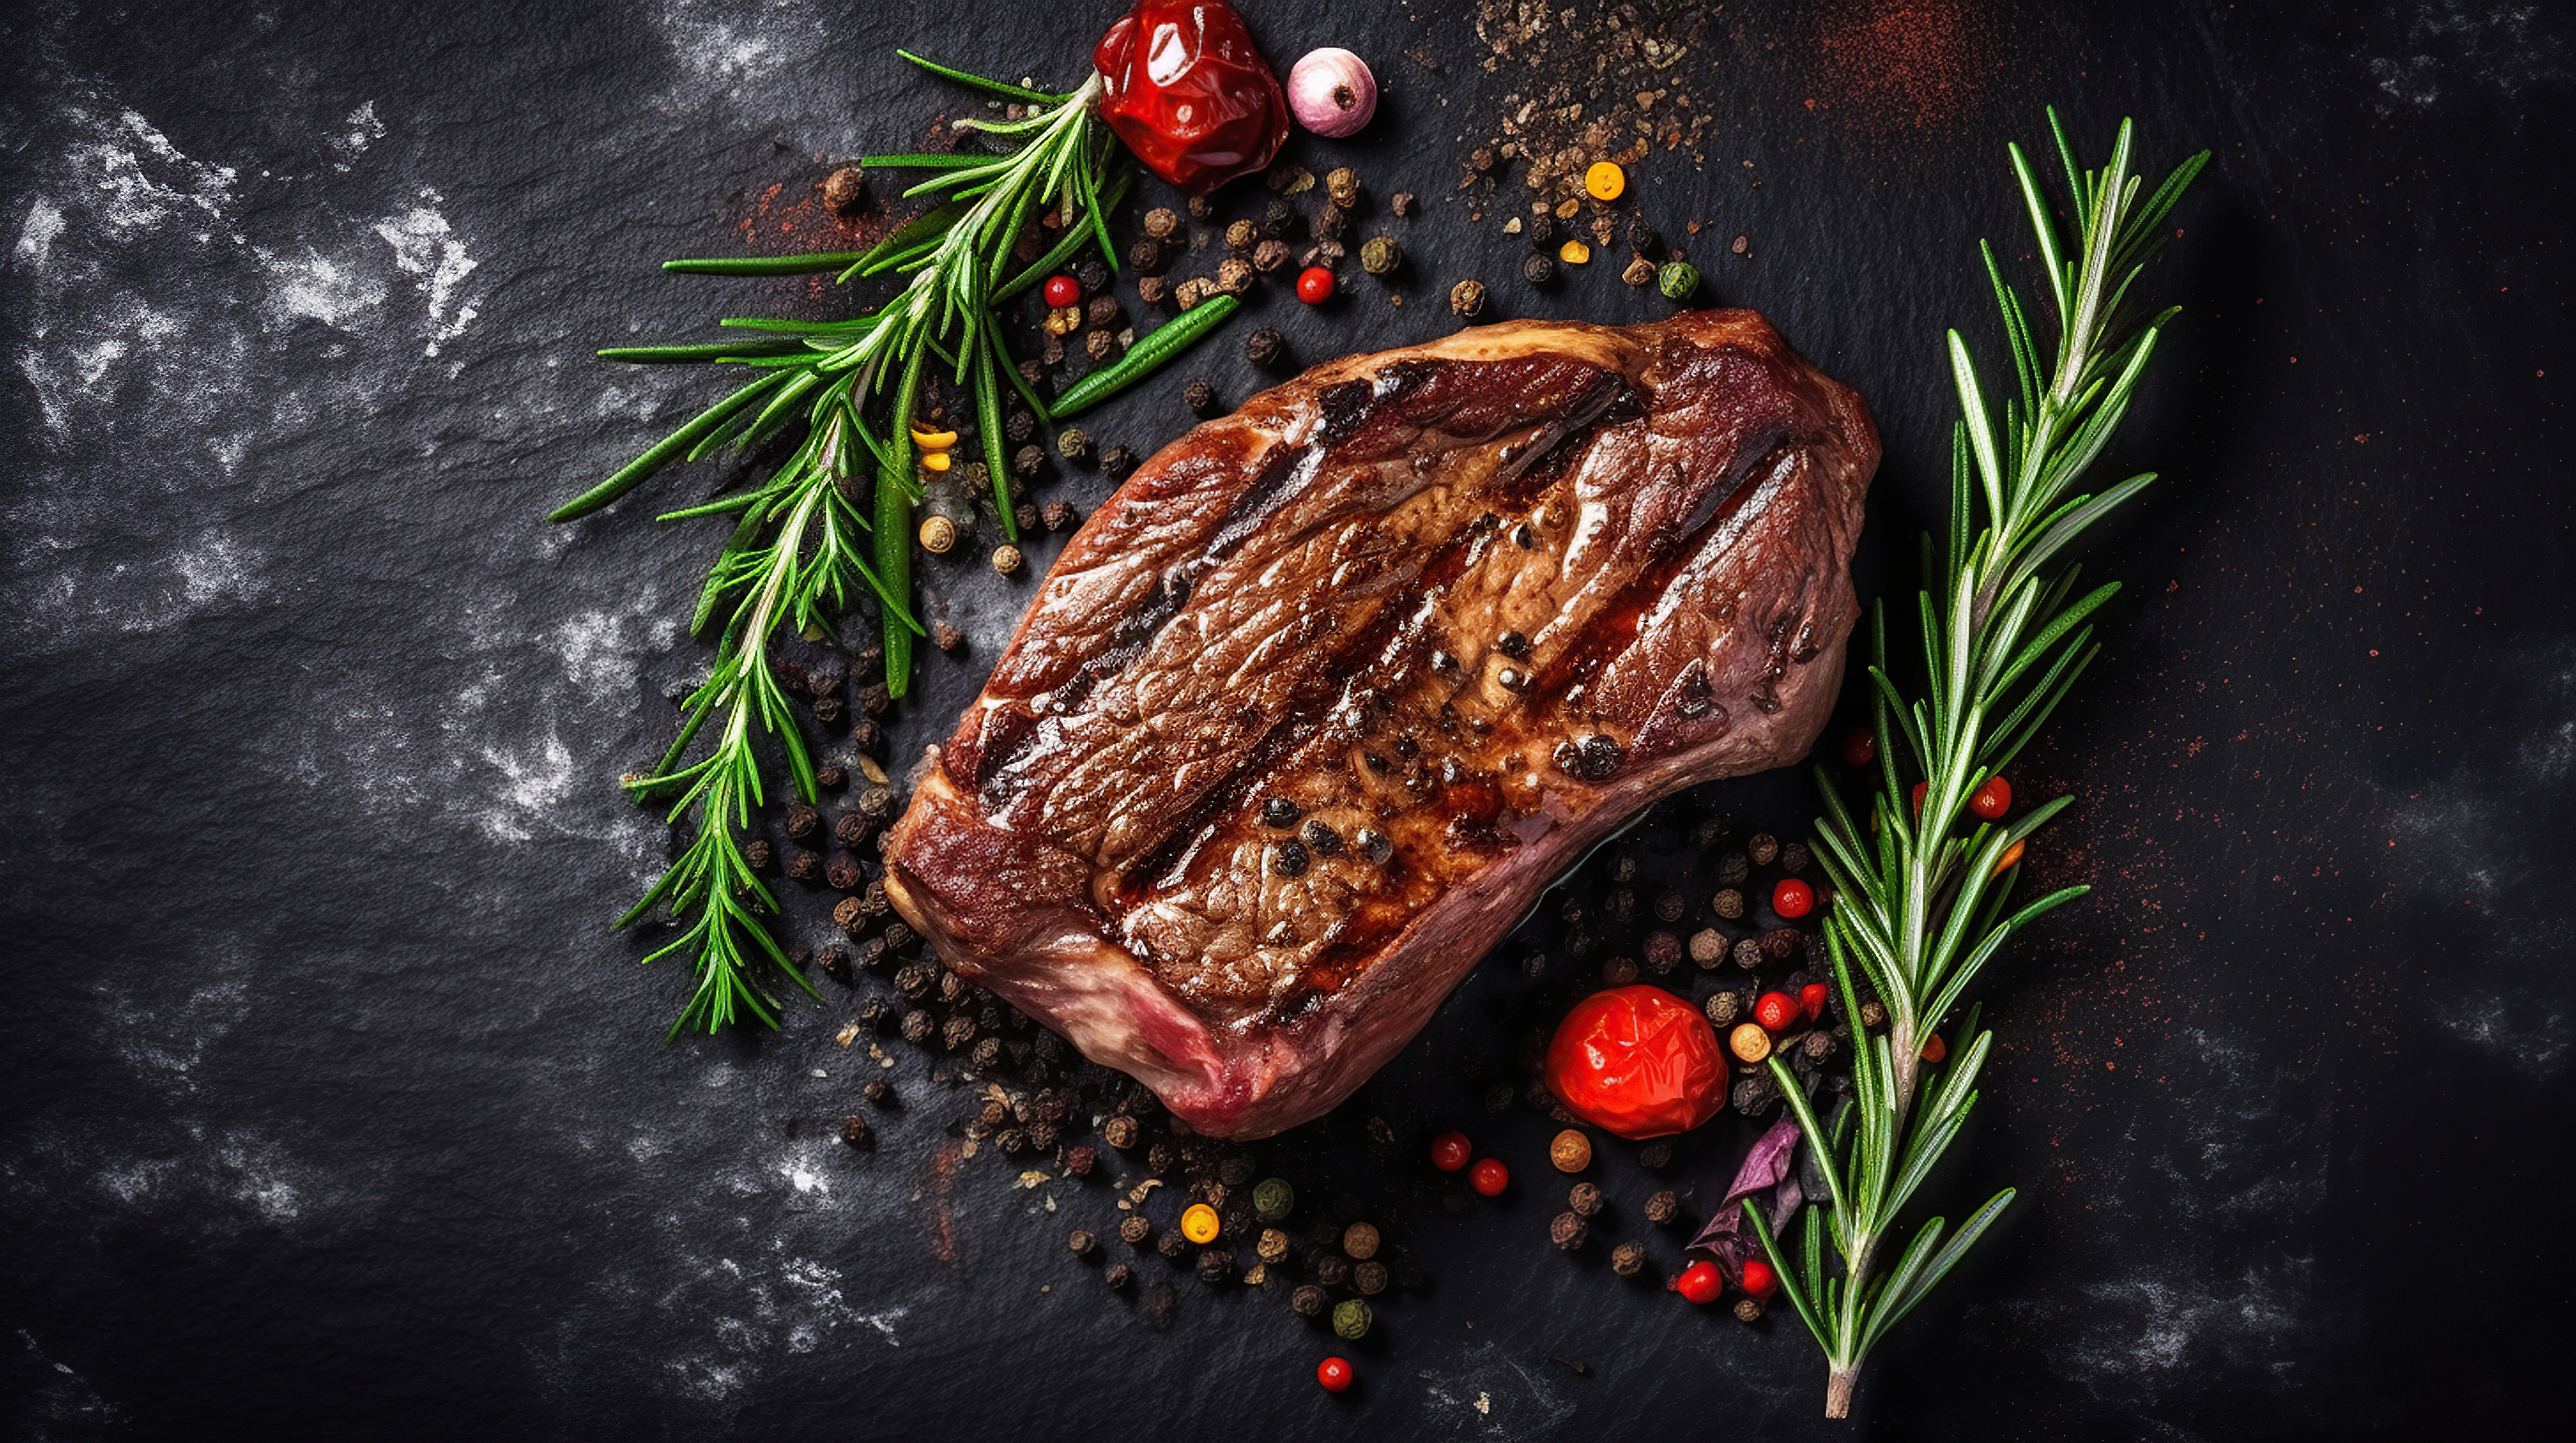 Entdecke, wie Du Steak selbst marinierst und beeindrucke Deine Gäste! Lese unseren leichten Schritt-für-Schritt Guide und starte Dein Grillerlebnis jetzt!